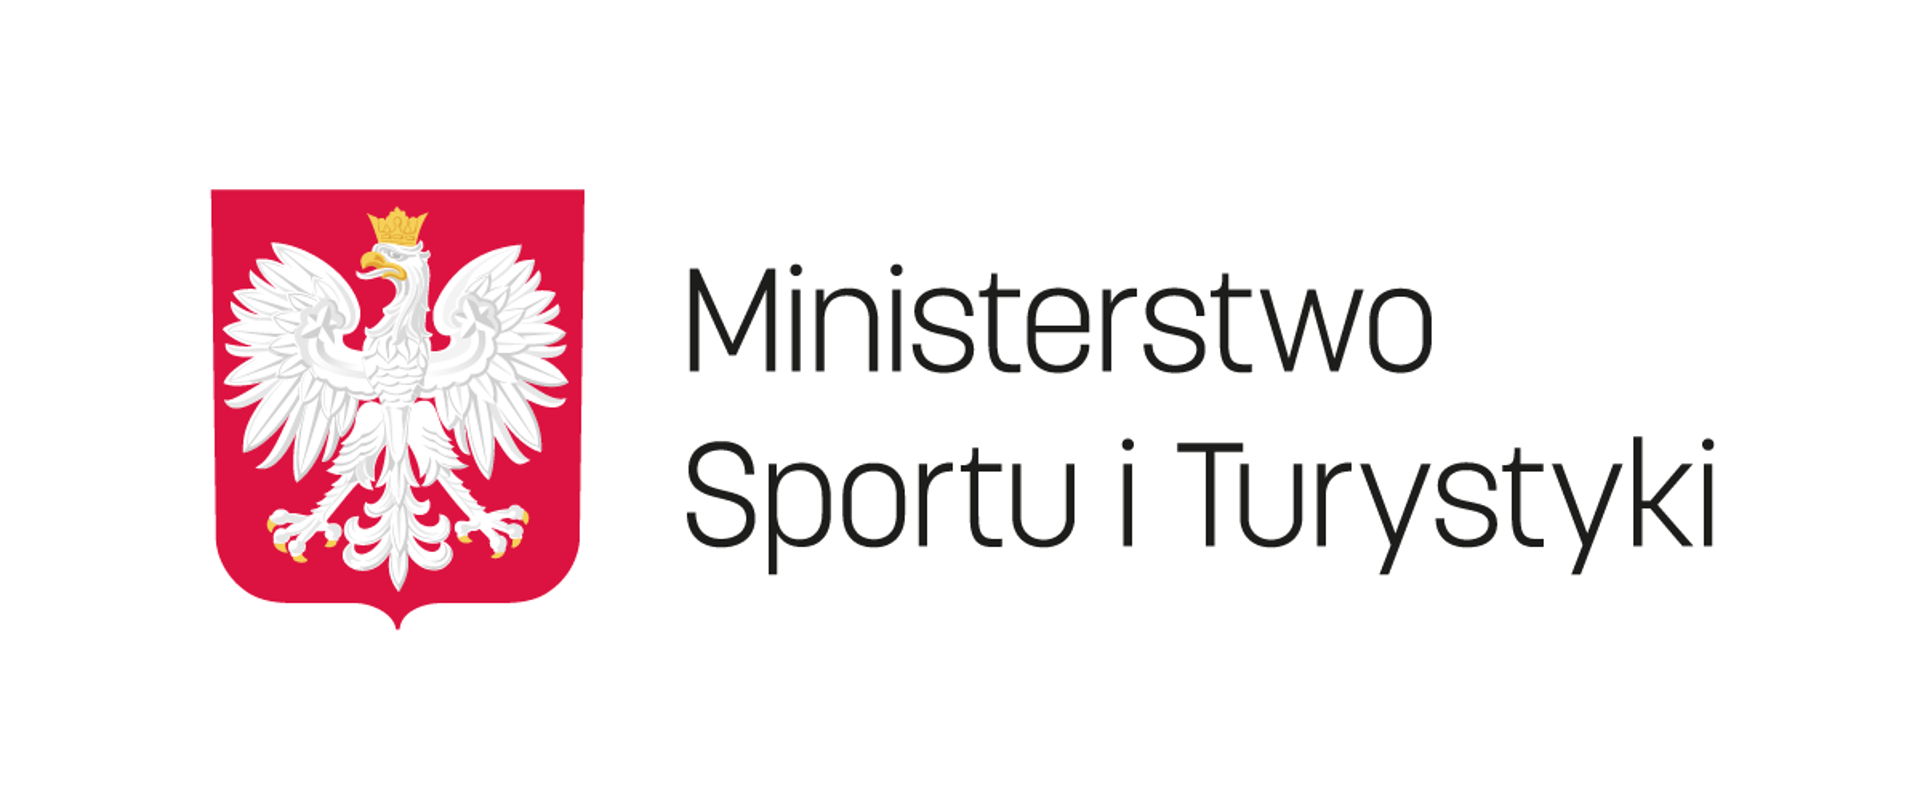 Logotyp Ministerstwo Sportu i Turystyki